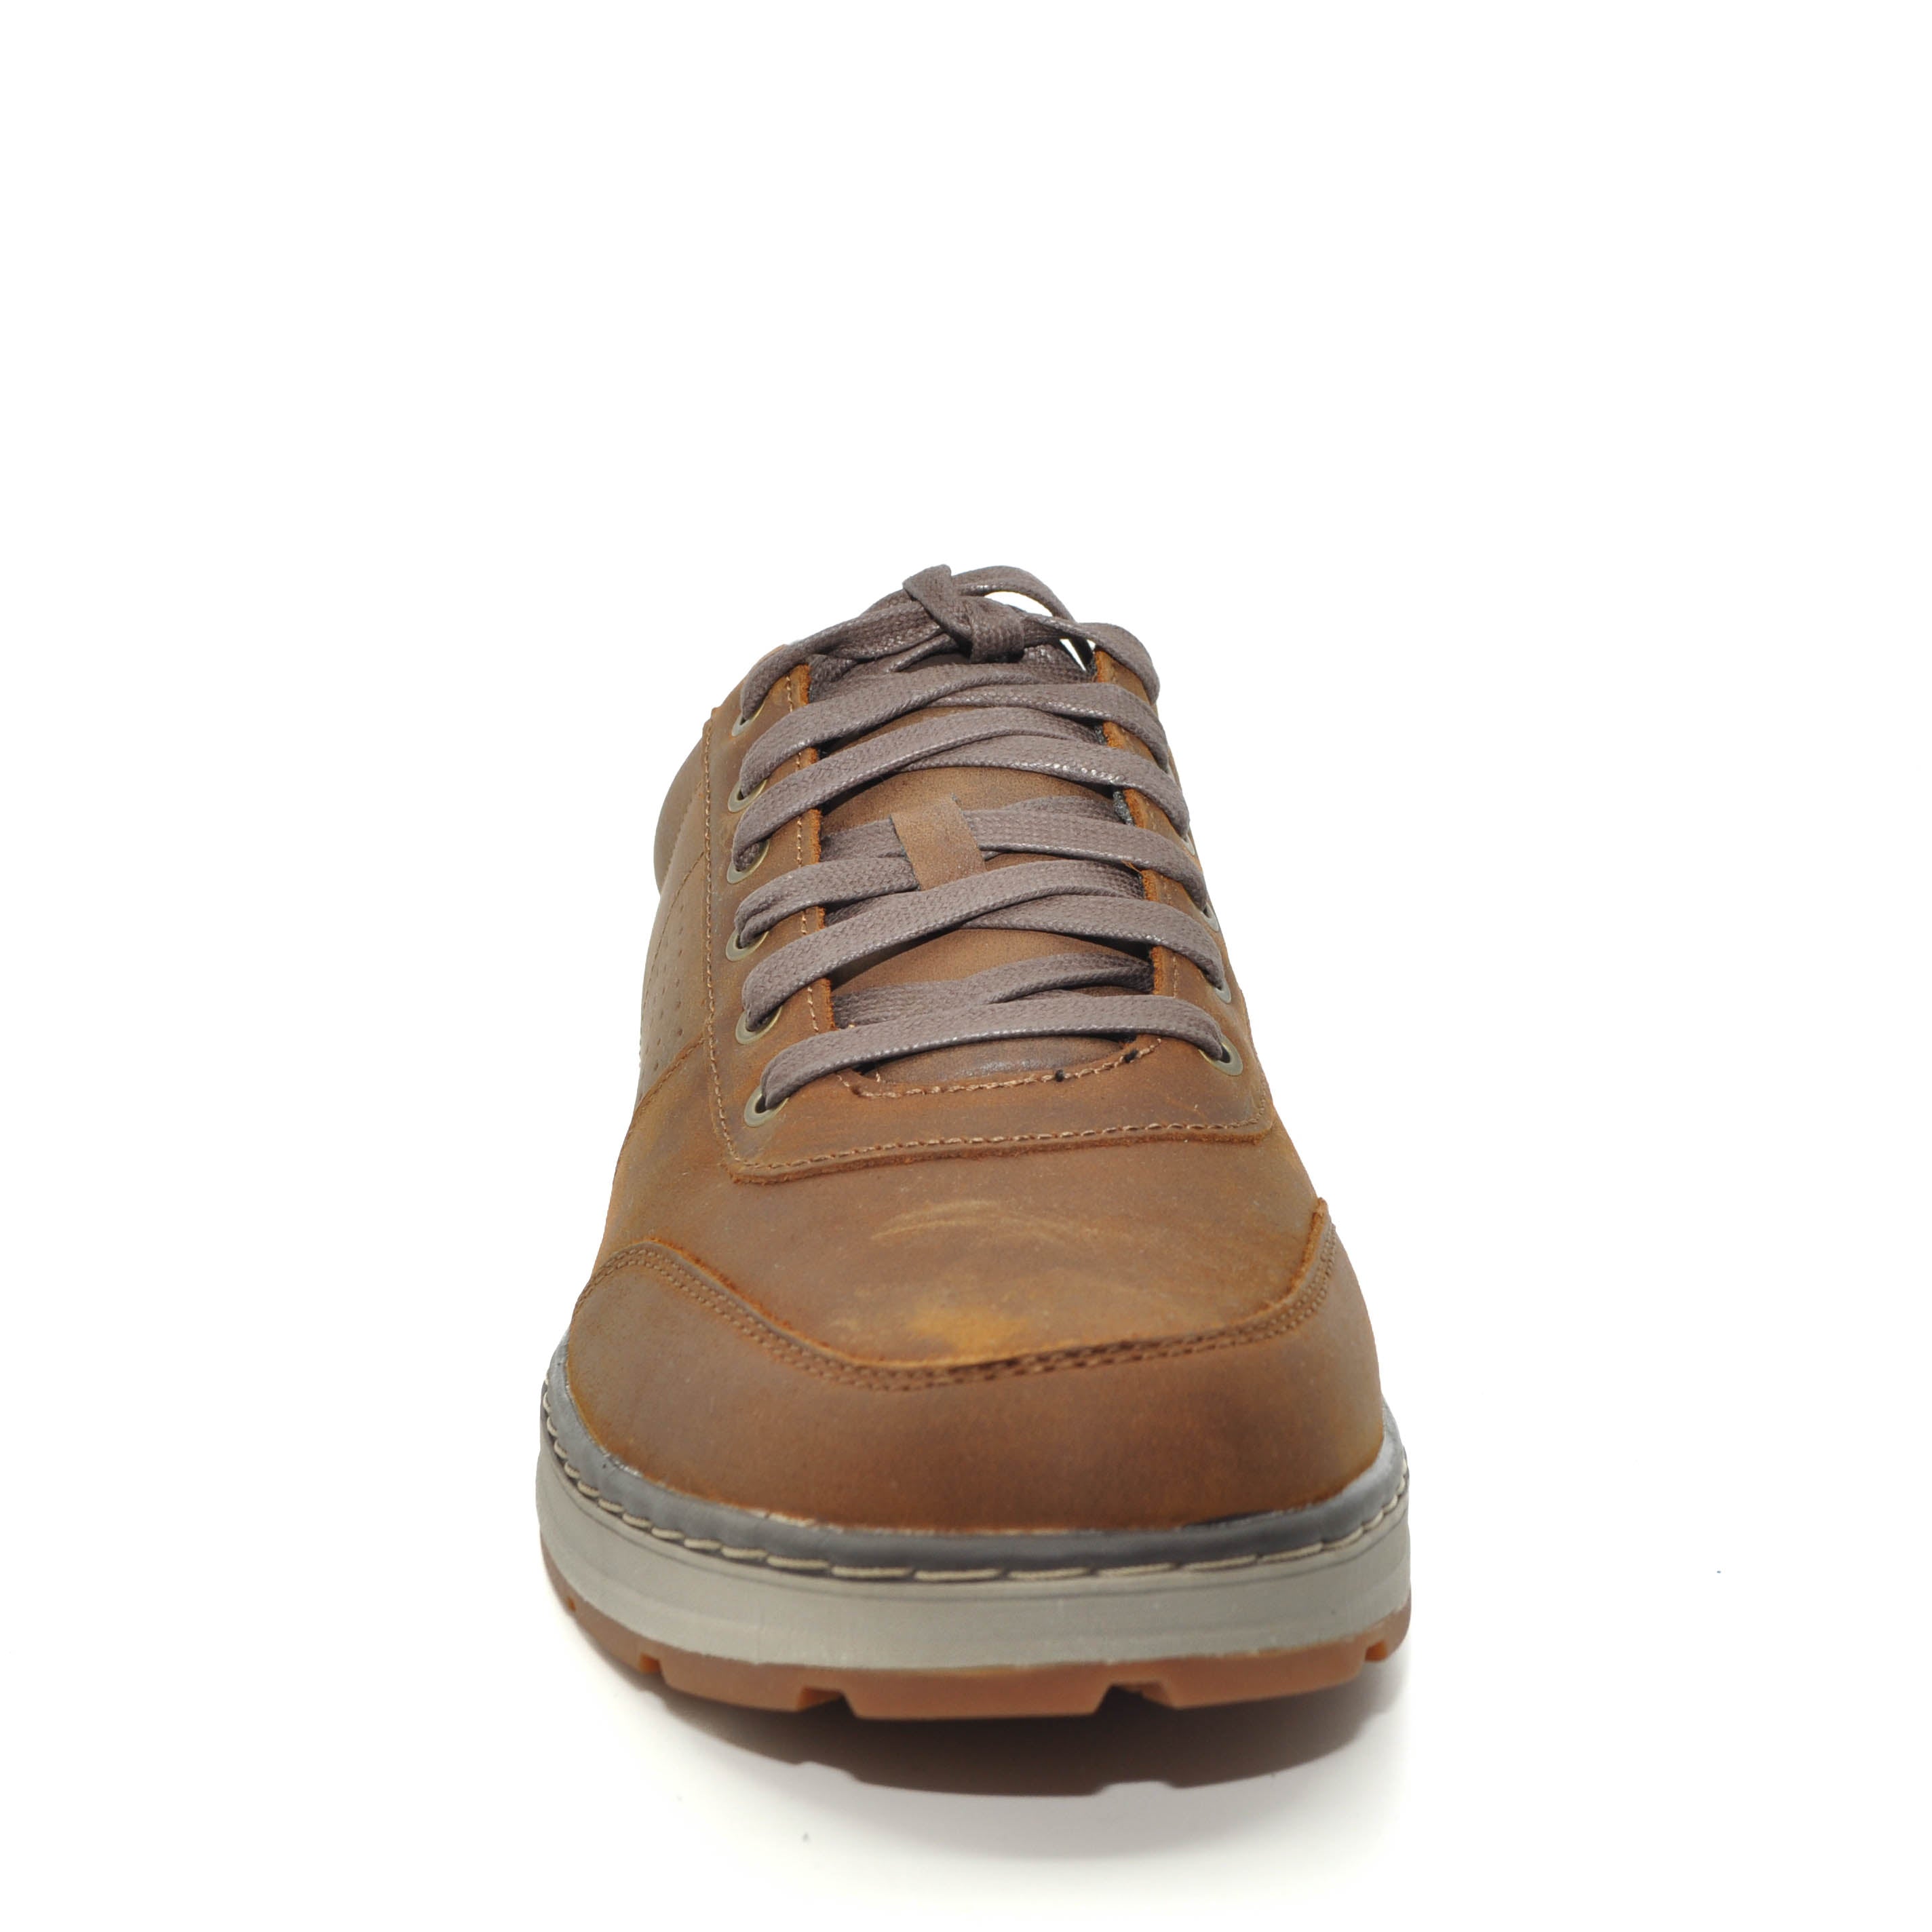 SKECHERS shoes online ireland | shoes | skechers ireland